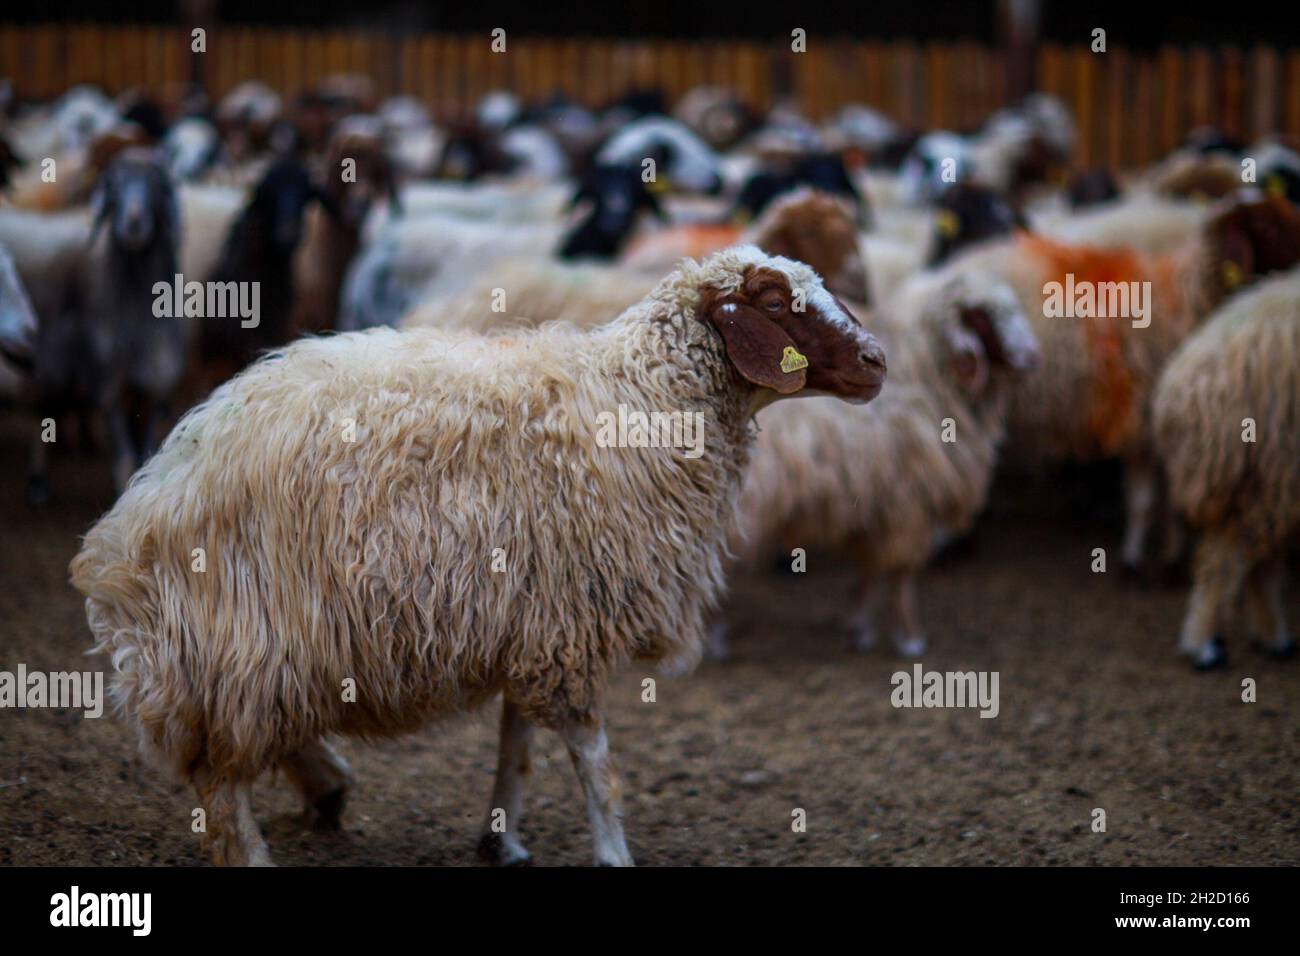 17 octobre 2021, Gaziantep, Anatolie, Turquie : Gaziantep,Turquie.19 octobre 2021.Moutons dans les fermes œGrand dans la ville de Gaziantep, dans le sud de la Turquie.La ferme reproduit des chèvres, des moutons et des poulets, et produit un grand nombre d'oeufs à aire libre.La ferme, qui cultive également des champignons et produit des fourrages pour animaux, s'engage à protéger l'environnement et à assurer la durabilité.L'entreprise est un exemple d'intégration réussie des Syriens qui s'installent en Turquie après avoir fui le conflit dans leur pays d'origine (Credit image: © Muhammed Ibrahim Ali/IMAGESLIVE via ZUMA Press Wire) Banque D'Images